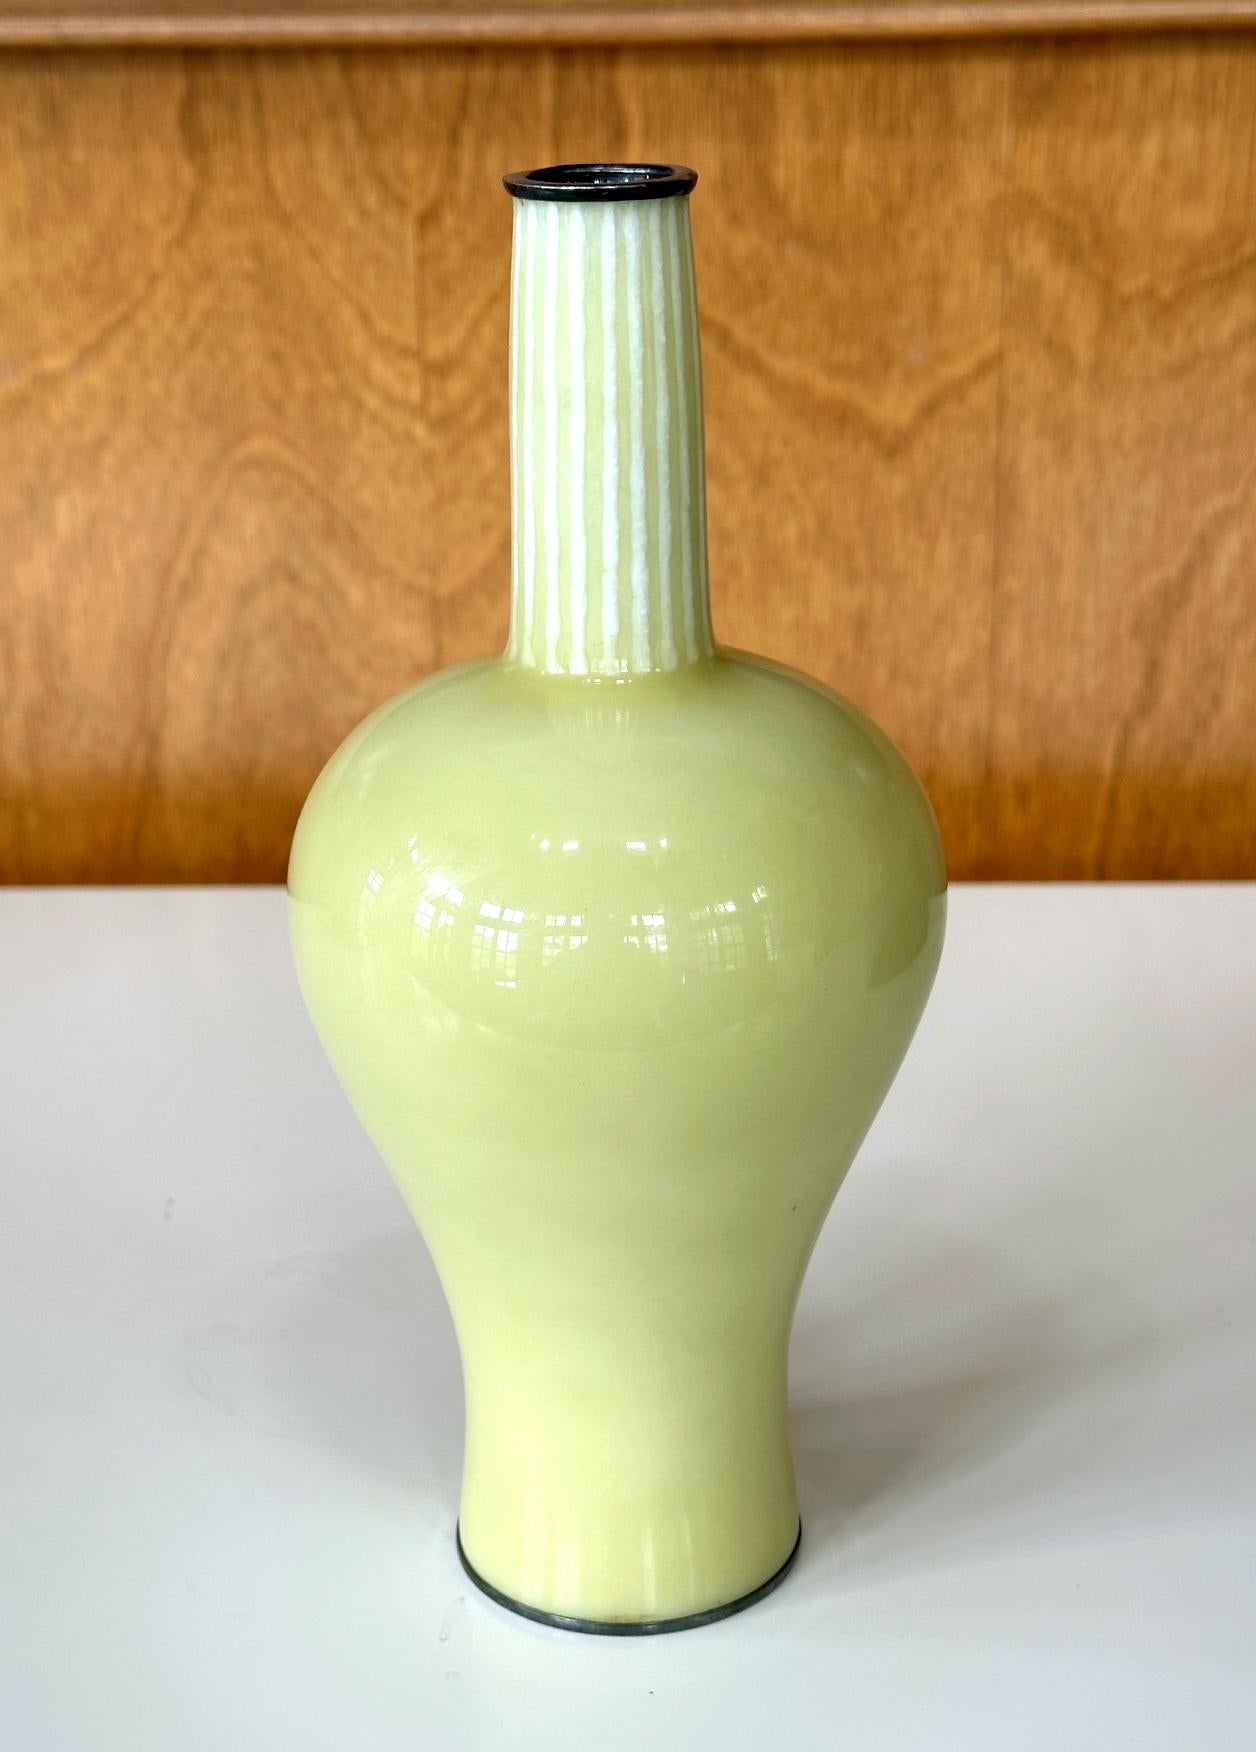 Vase japonais en cloisonné en forme de bouteille réalisé par Ando Jubei (1876-1963) vers les années 1910-20 (fin de la période Meiji à Taisho). Le vase présente une surface entièrement lisse, sans aucun fil de fer. Cette technique, connue sous le